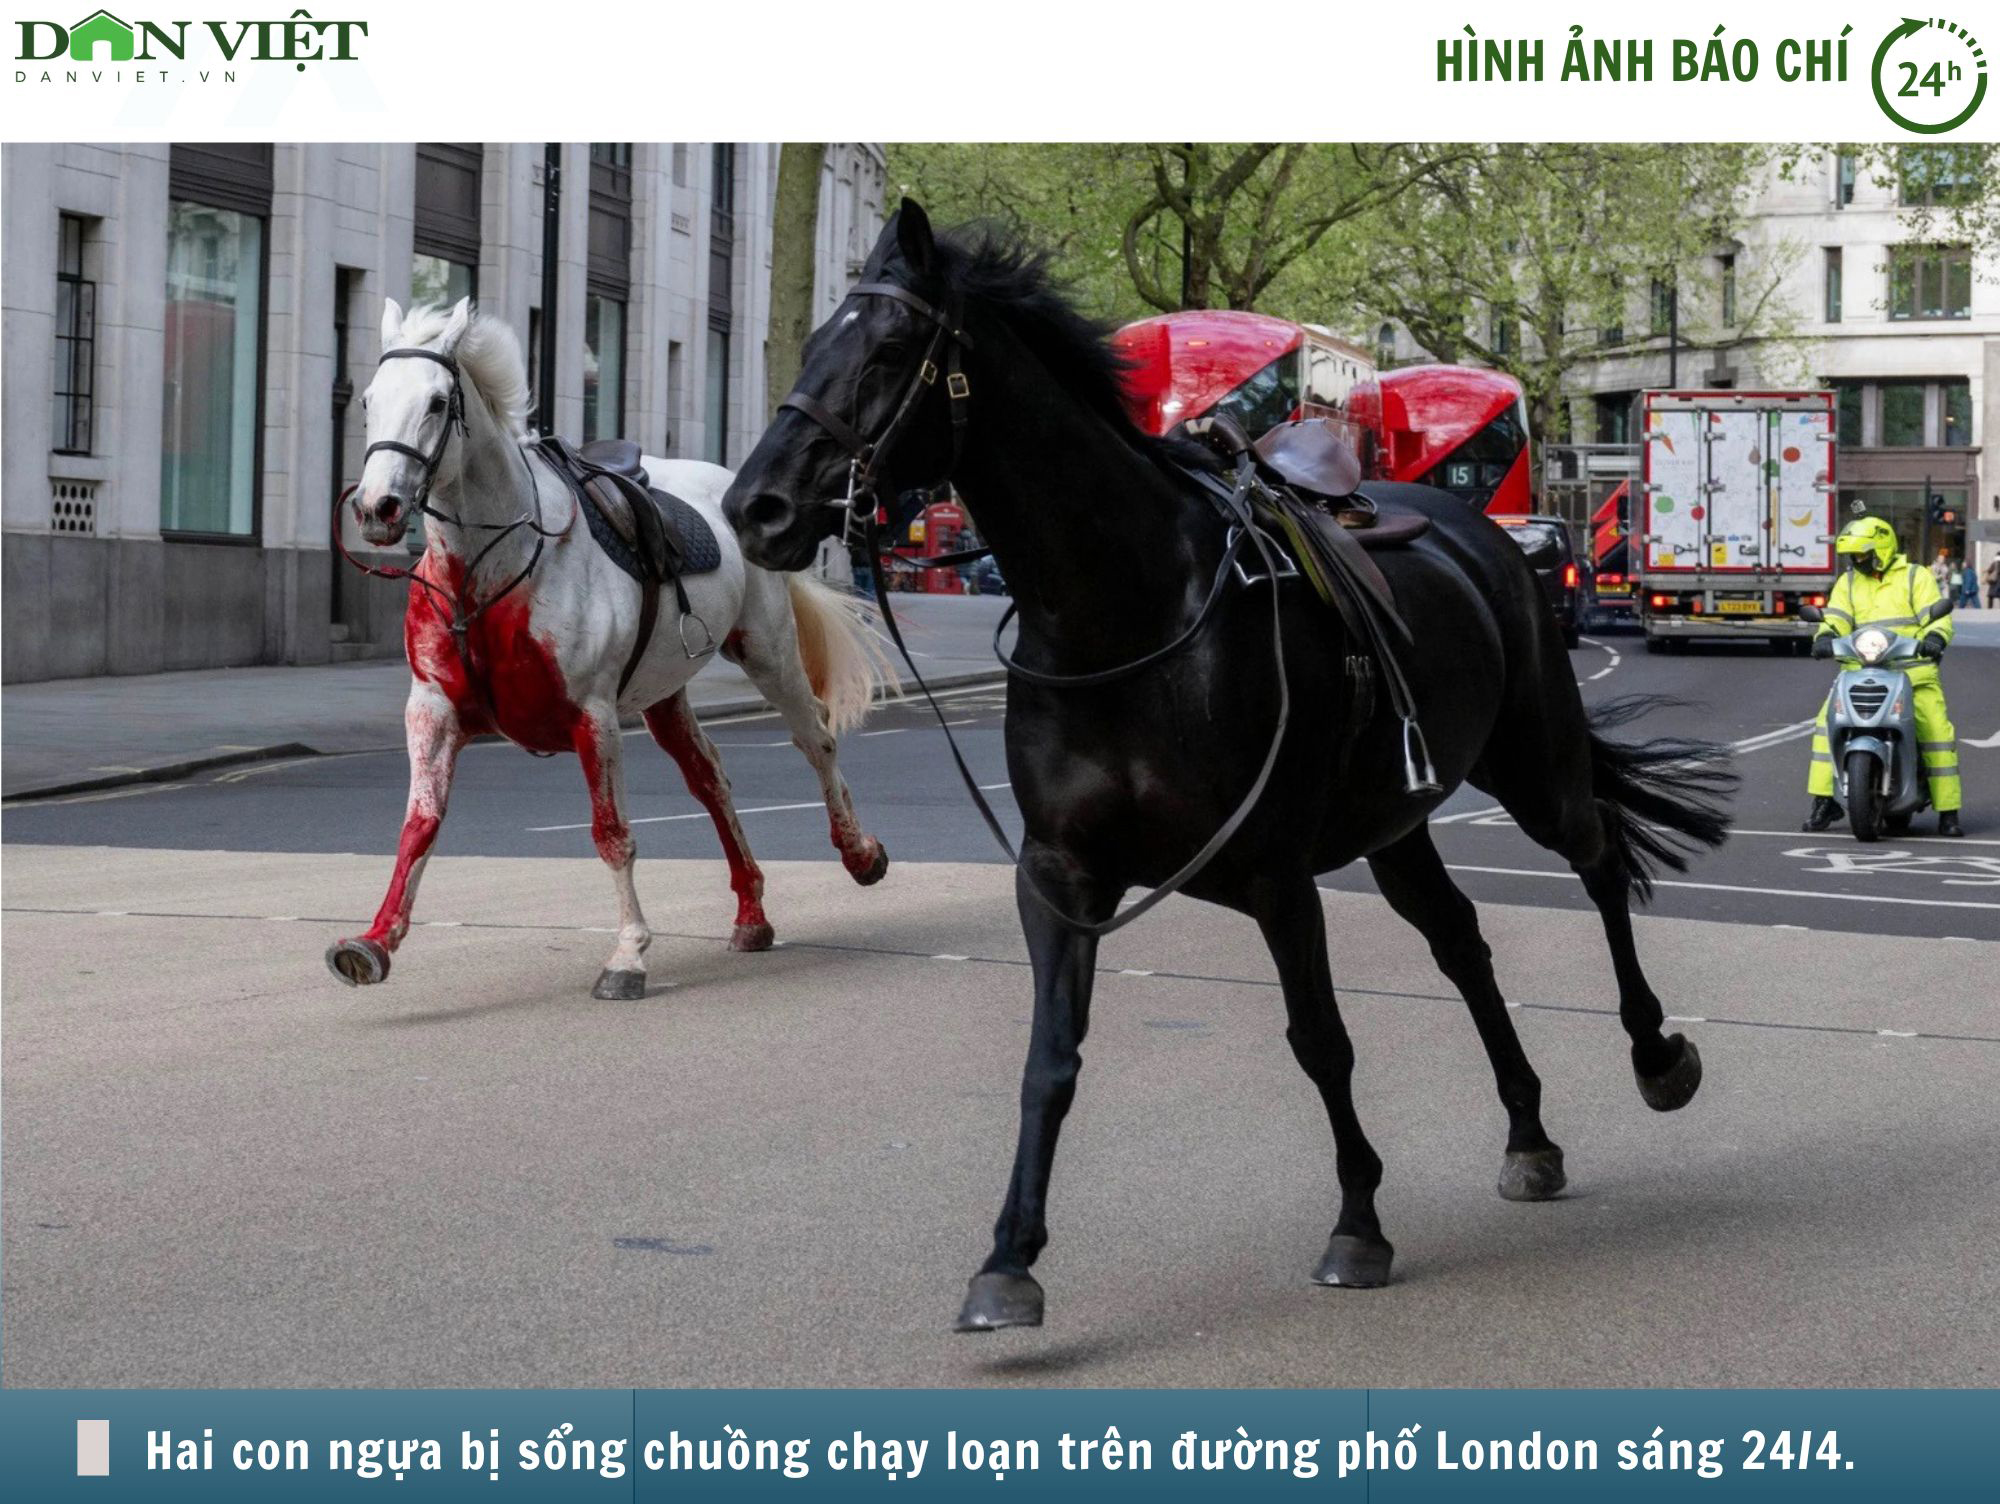 Hình ảnh báo chí 24h: Ngựa kỵ binh Anh sổng chuồng, làm loạn đường phố, nhiều người bị thương- Ảnh 1.